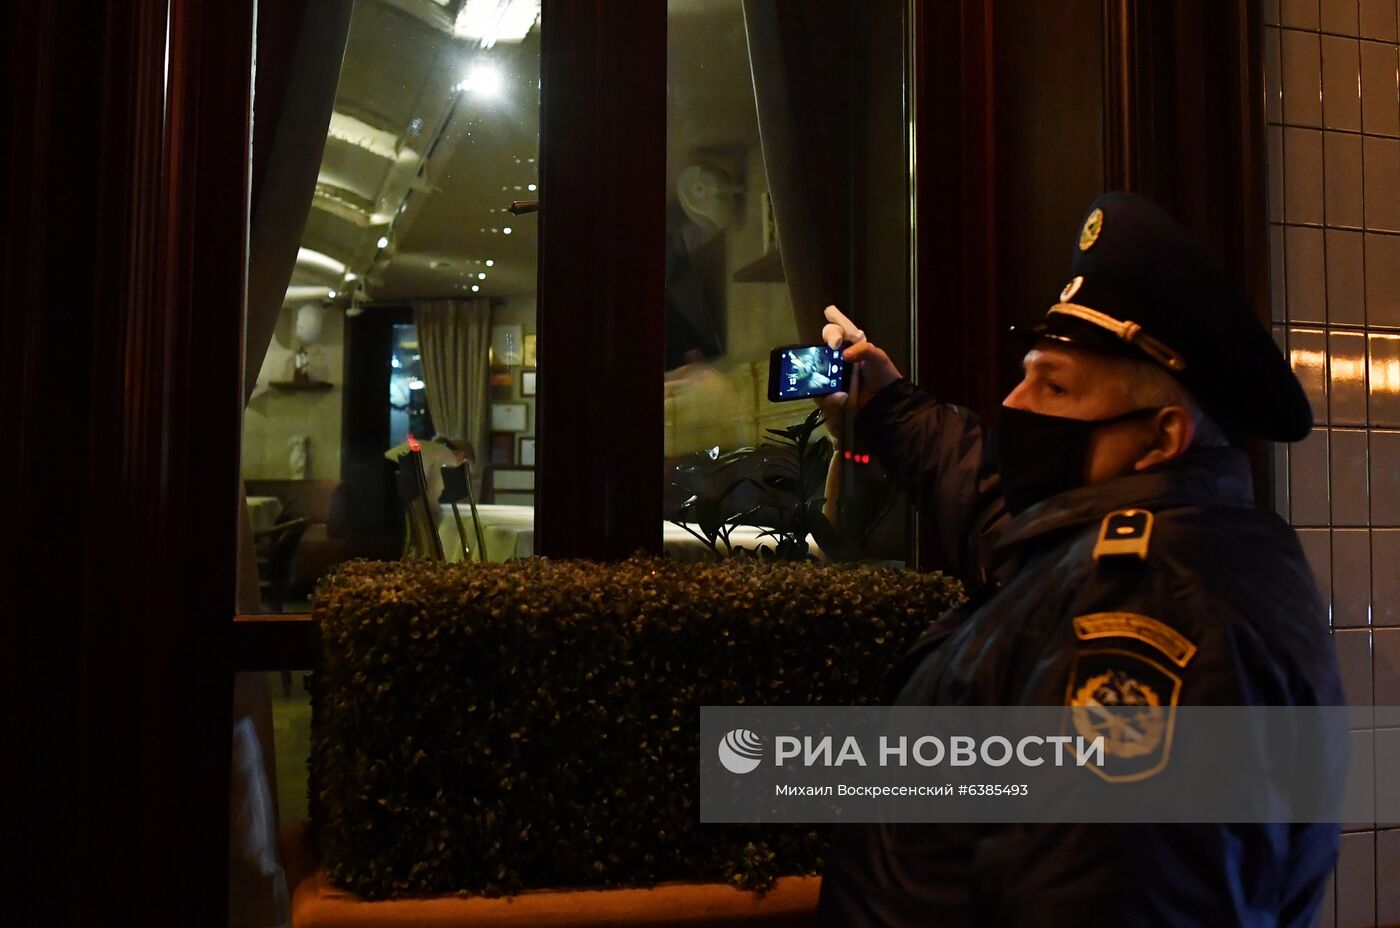 Закрытие баров и ресторанов Москвы в ночное время из-за коронавируса